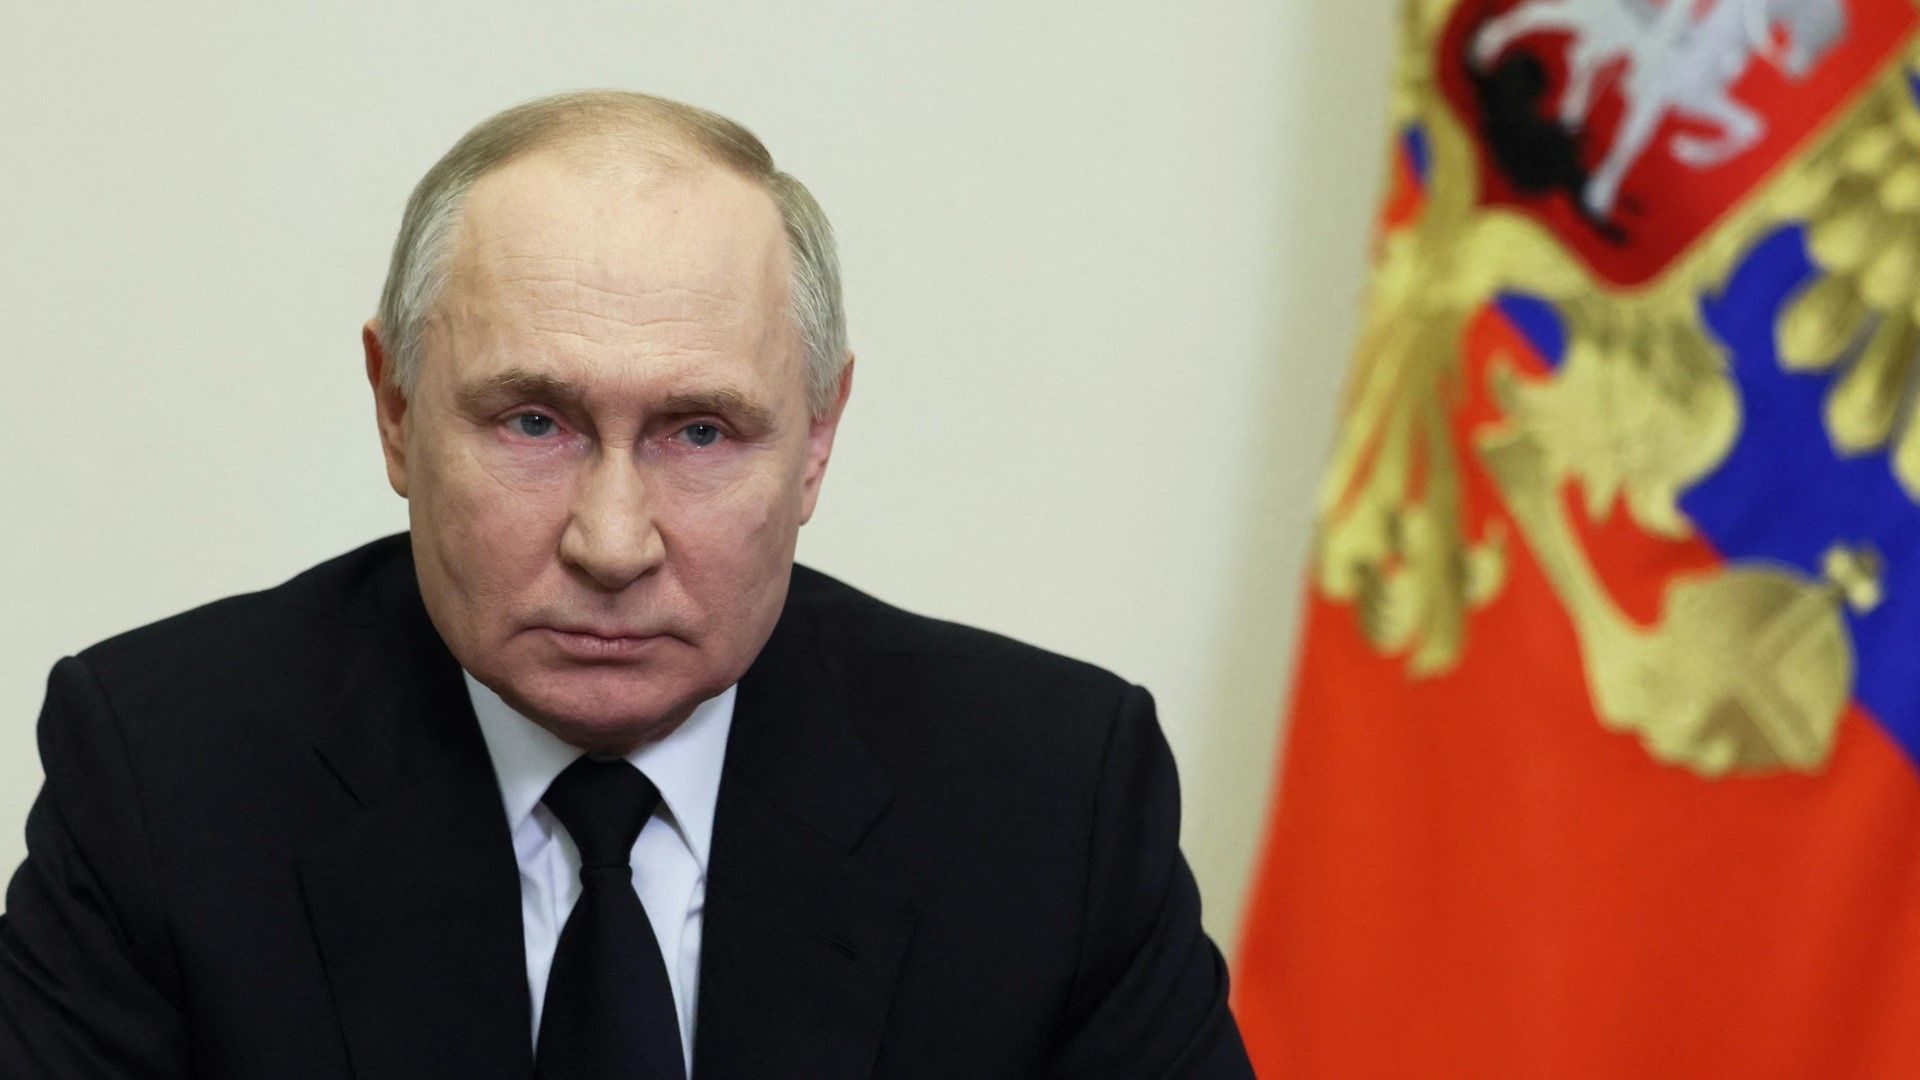 Putin: Anschlag bei Moskau ist "barbarischer terroristischer Akt"